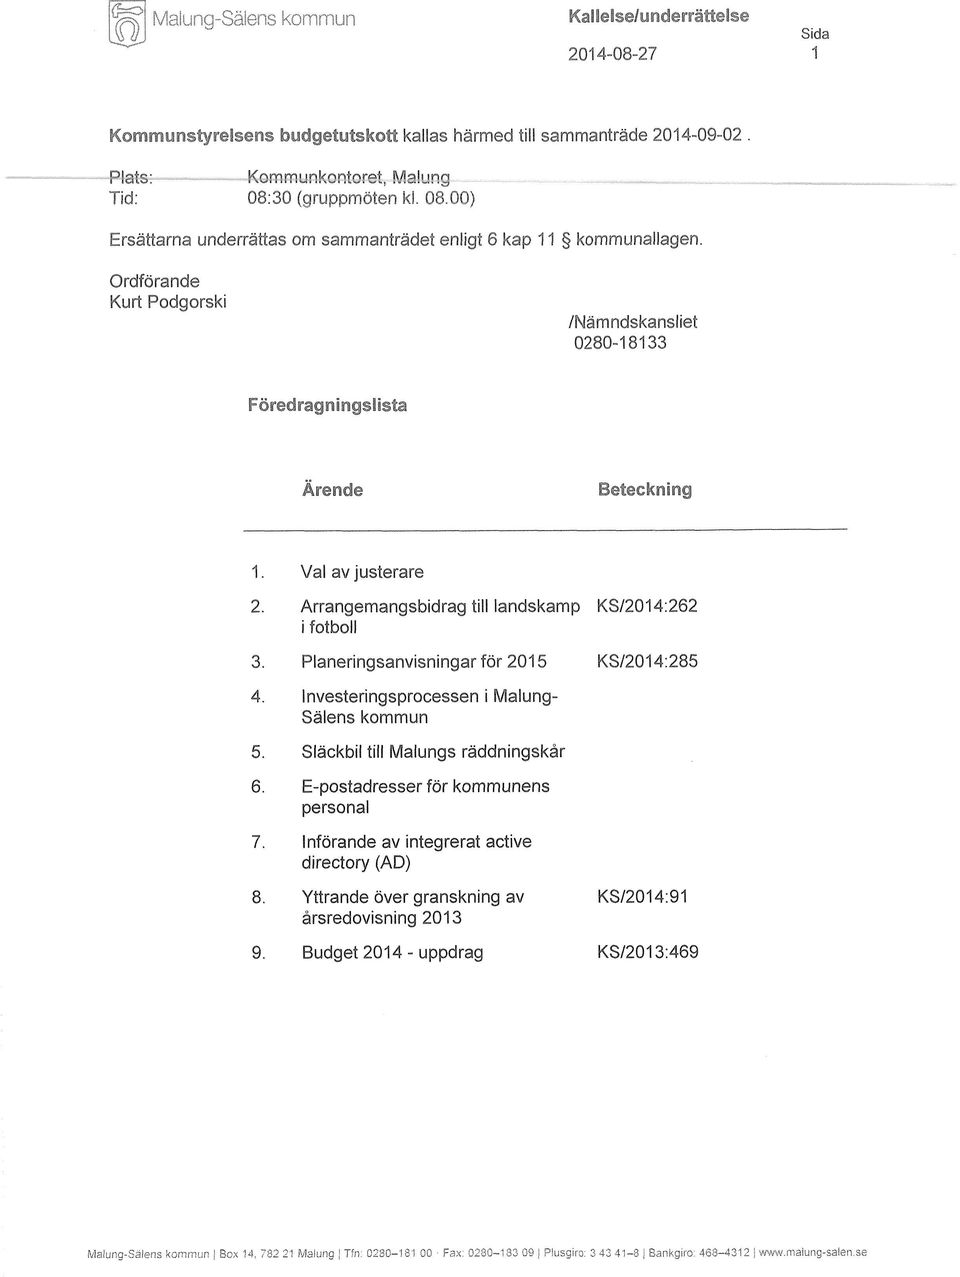 Arrangemangsbidrag till landskamp KS/2014:262 i fotboll 3. Planeringsanvisningar för 2015 KS/2014:285 4. Investeringsprocessen i Malung- Sälens kommun 5. Släckbil till Malungs räddningskår 6.